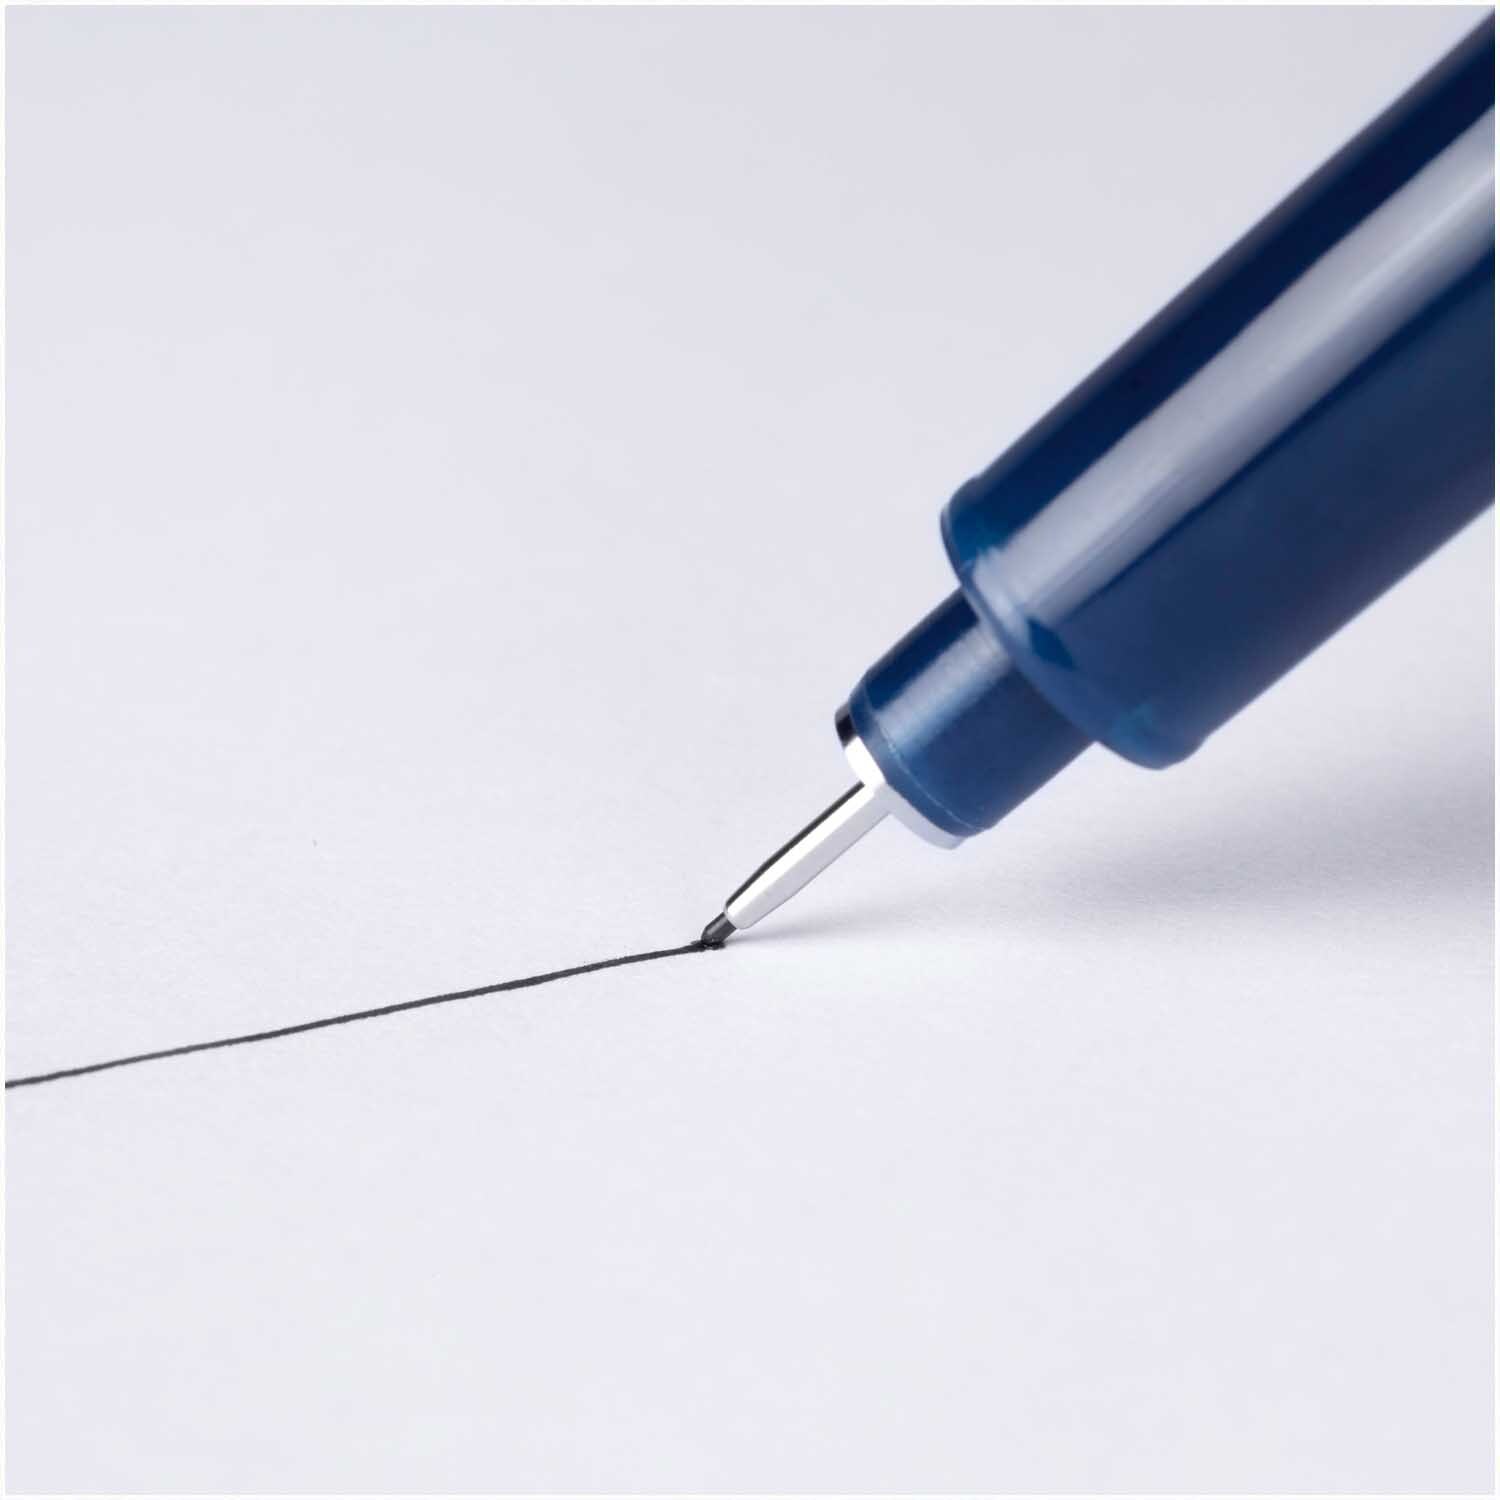 Fineliner MONO drawing Pen 0,5mm